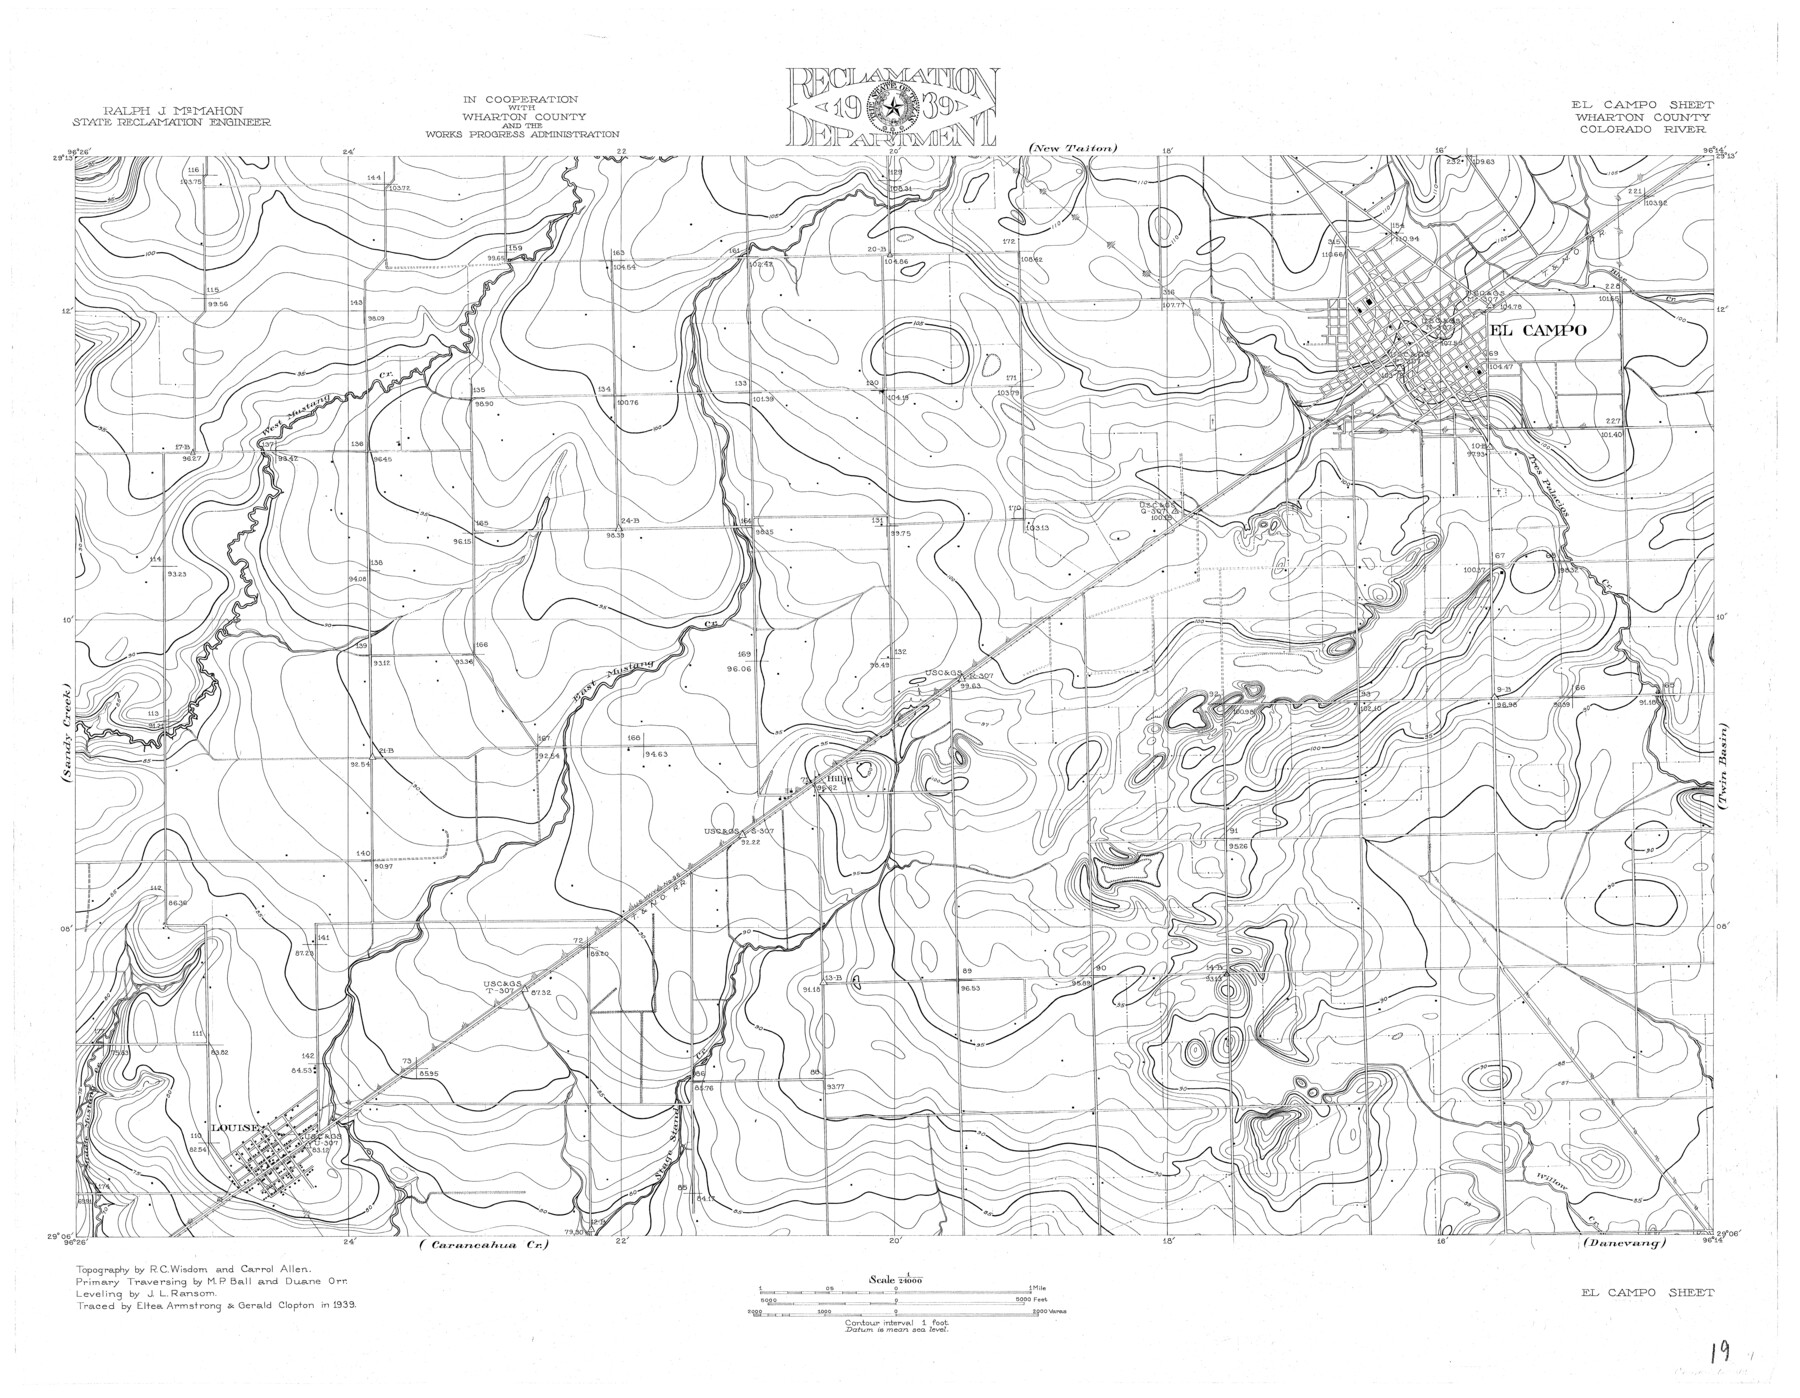 65318, Colorado River, El Campo Sheet, General Map Collection